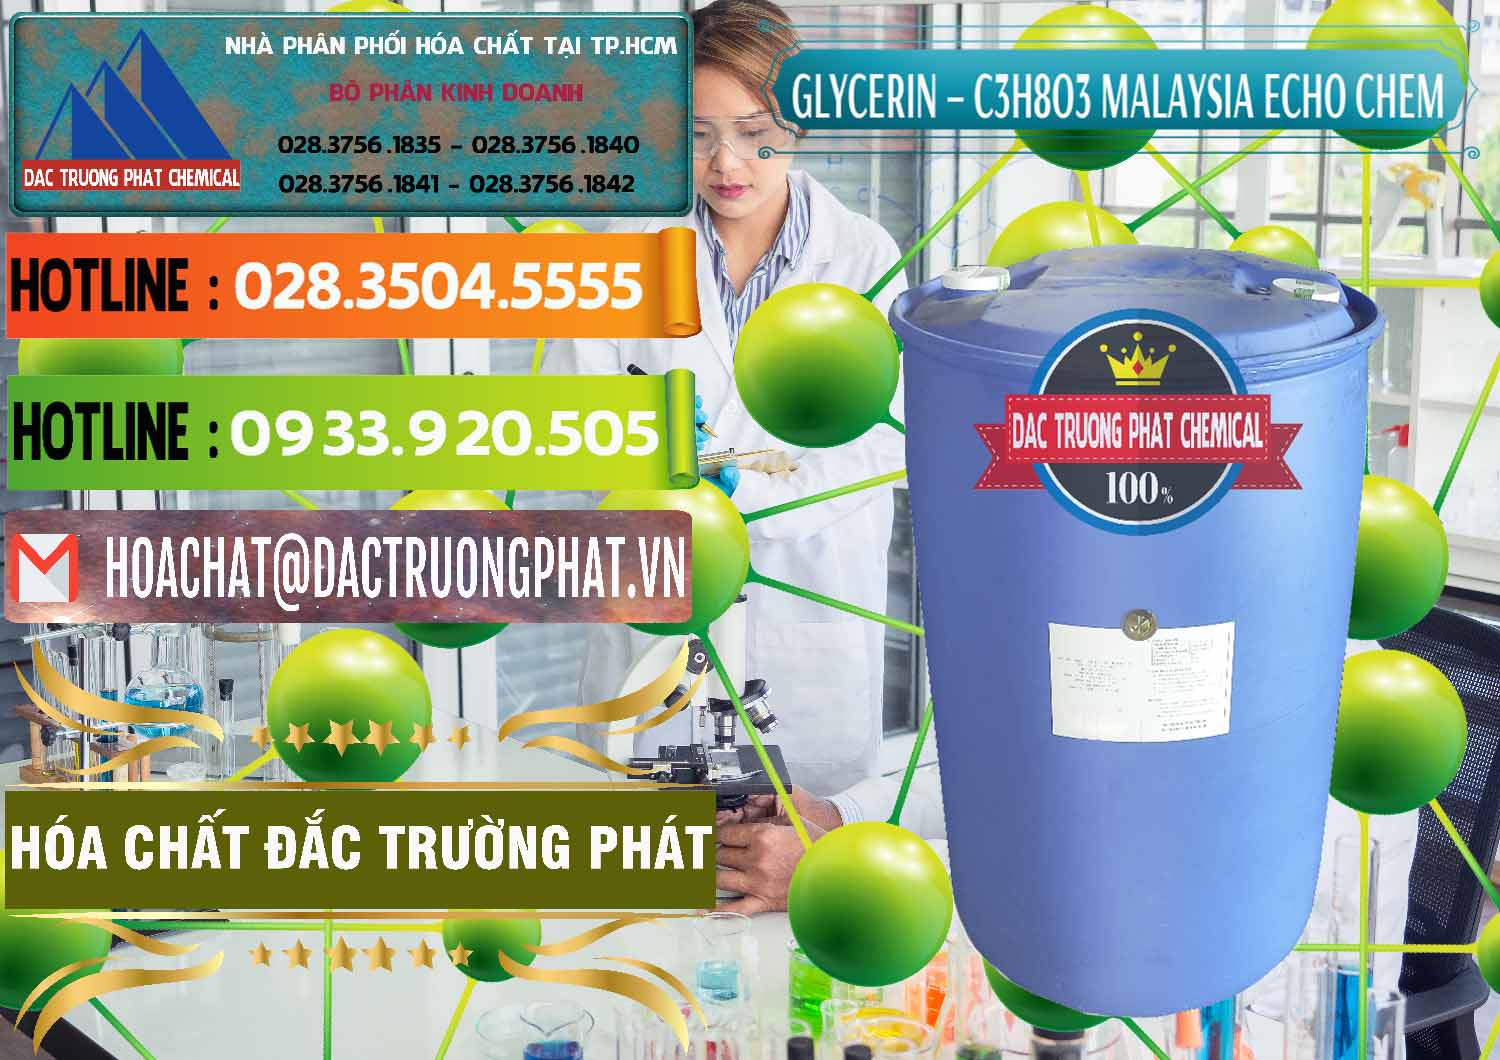 Chuyên nhập khẩu và bán C3H8O3 - Glycerin 99.7% Echo Chem Malaysia - 0273 - Đơn vị cung cấp - bán hóa chất tại TP.HCM - cungcaphoachat.com.vn